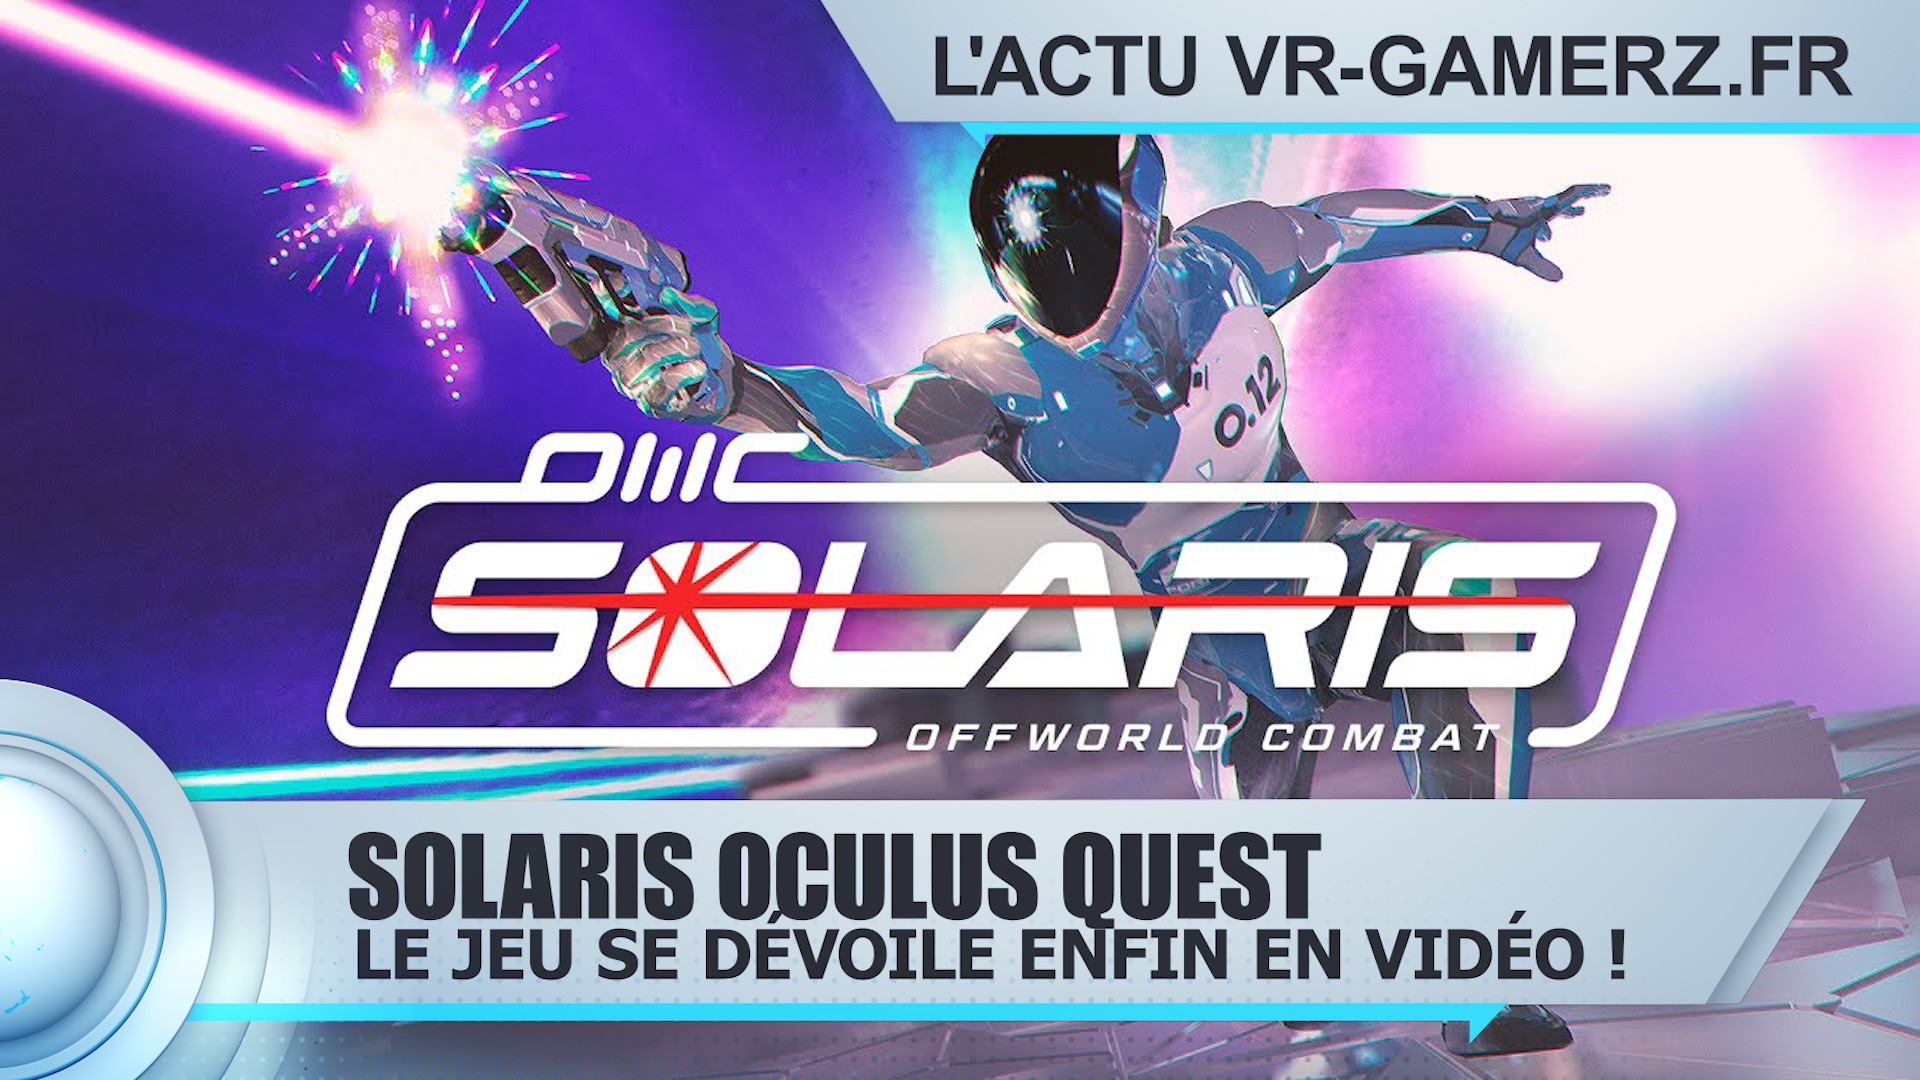 Solaris Oculus quest est repoussé au 24 septembre